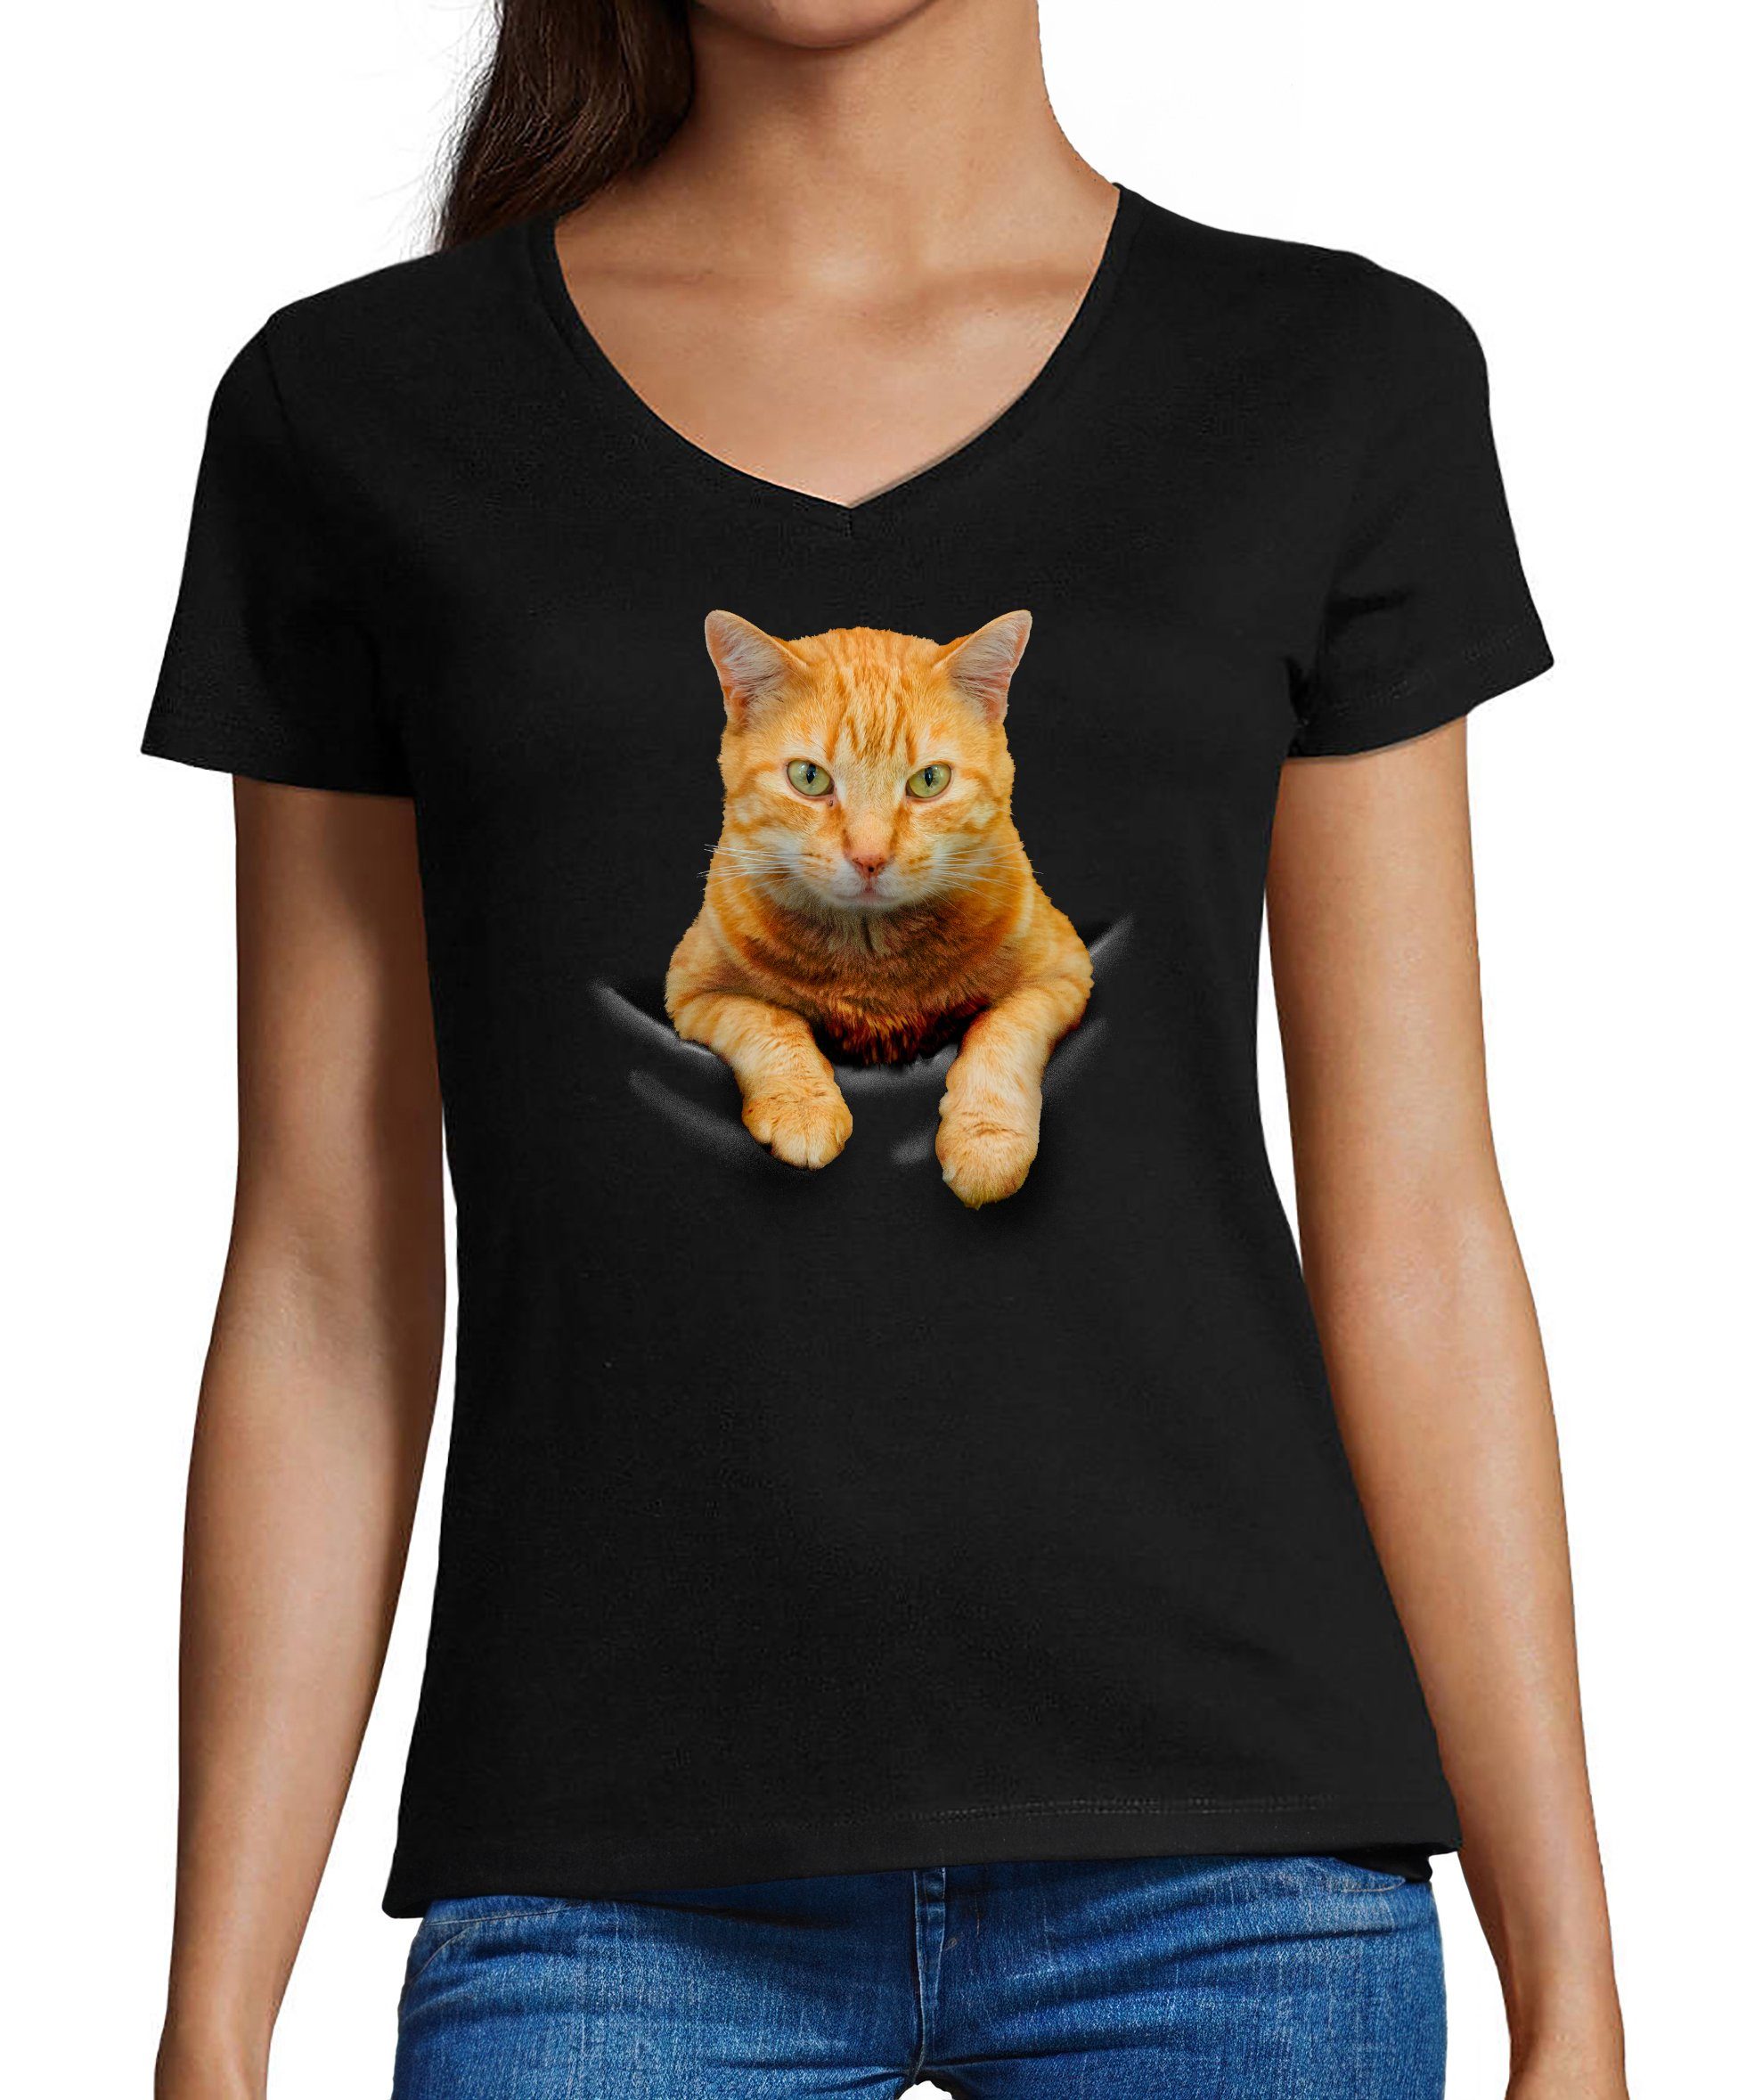 MyDesign24 T-Shirt Damen Katzen Print Shirt bedruckt - Gelbe Katze in der Tasche Baumwollshirt mit Aufdruck, Slim Fit, i109 schwarz